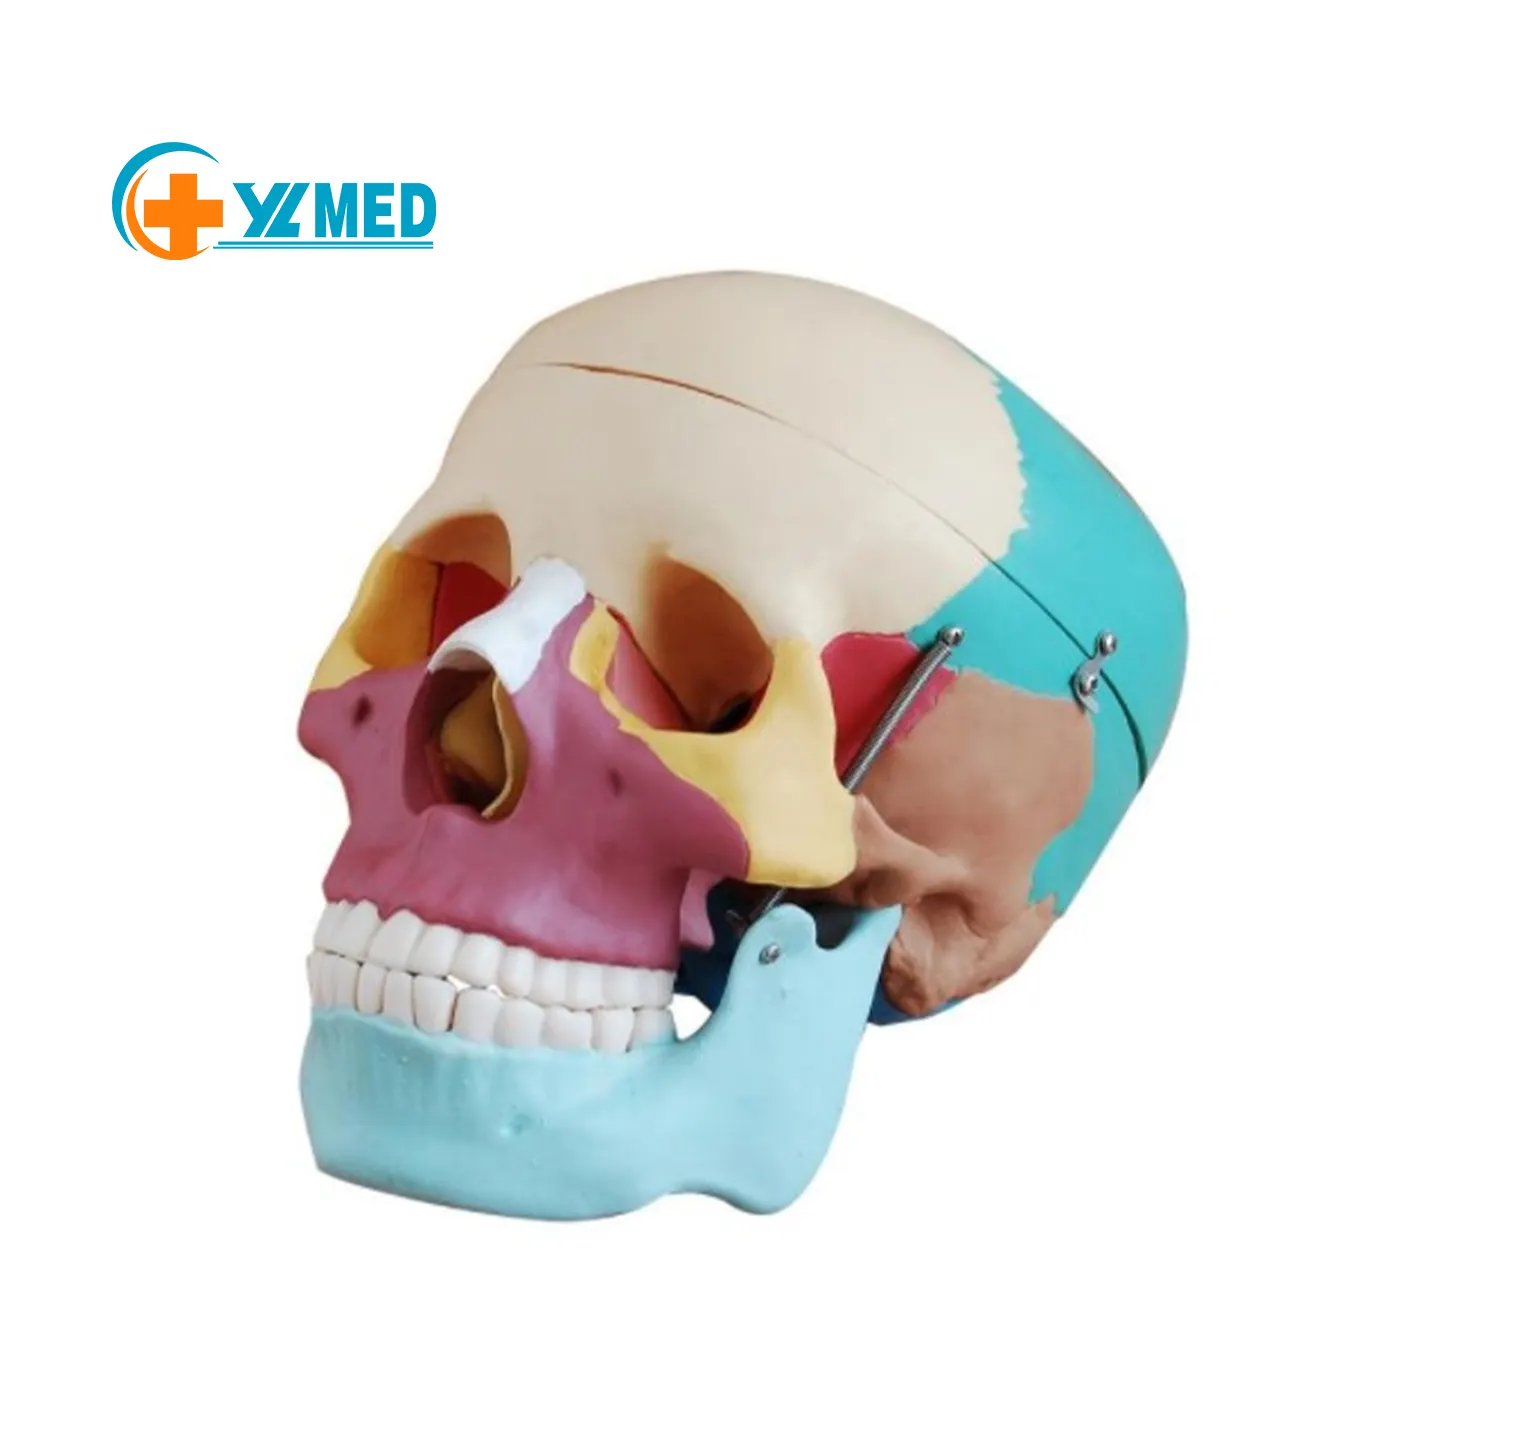 Cráneo esqueleto modelo de tamaño natural modelo de cráneo con los músculos 14 parte del cráneo de los músculos de la columna cervical y el hueso hioides